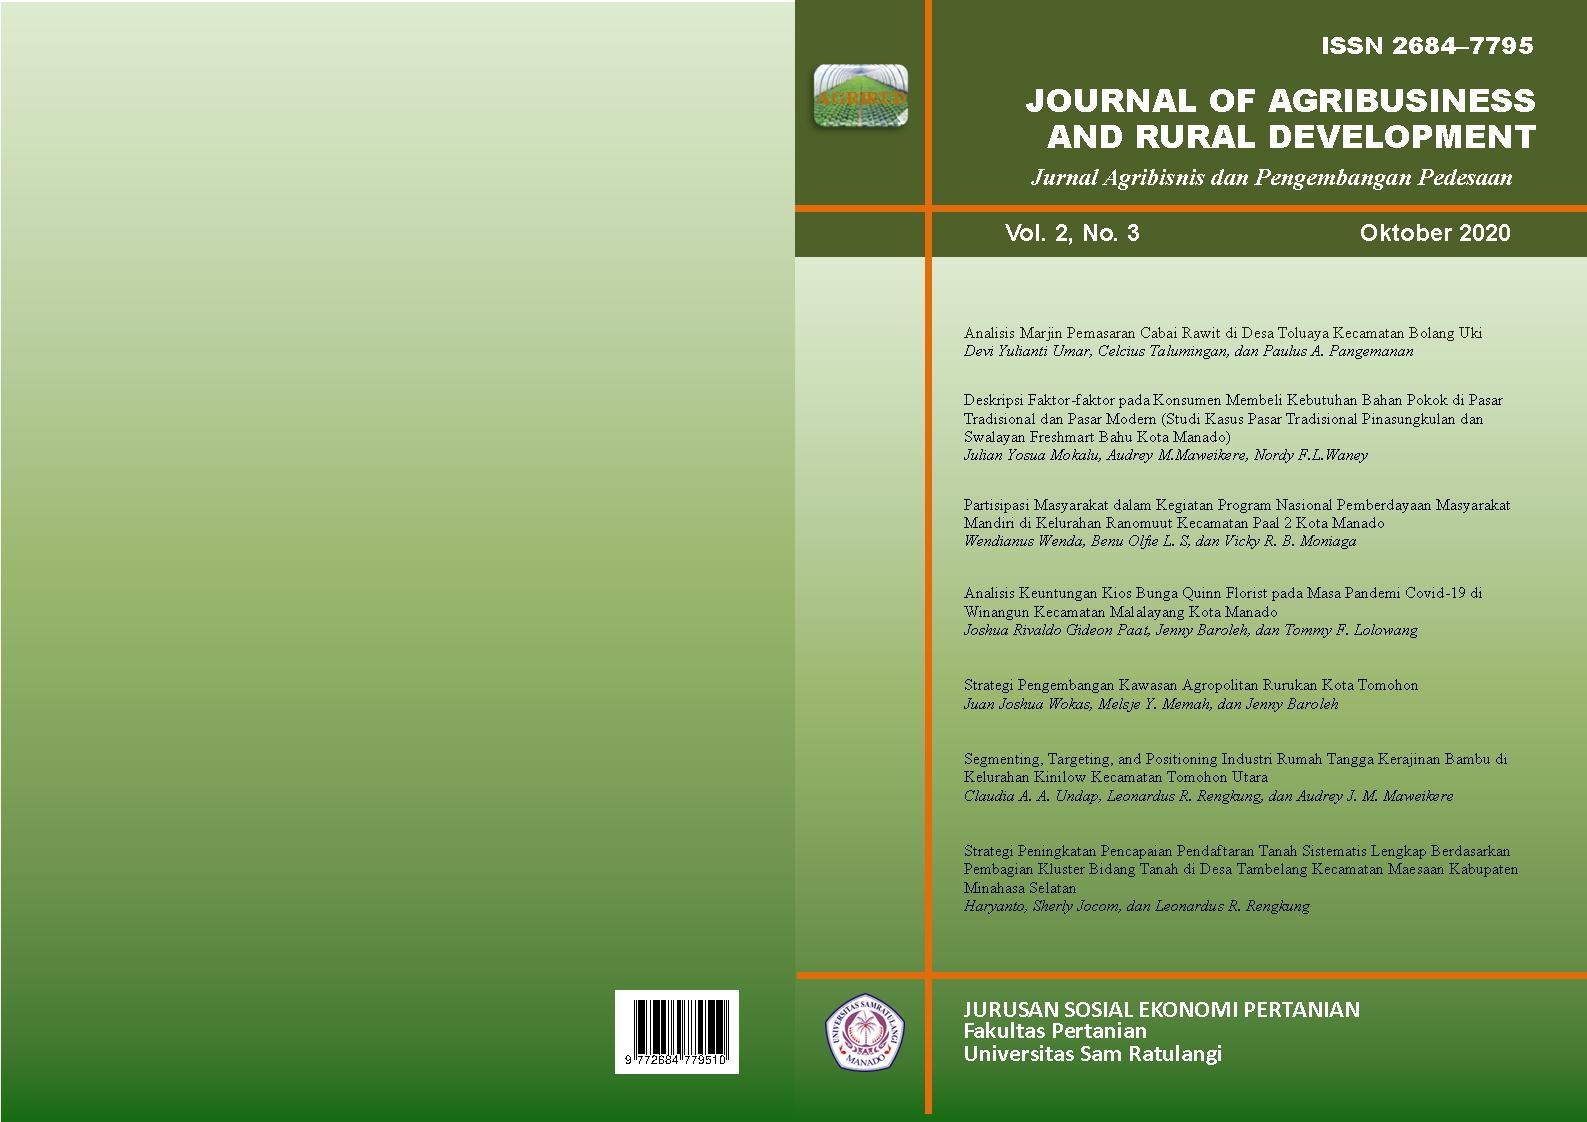 					View Vol. 2 No. 3 (2020): Journal of Agribusiness and Rural Development (Jurnal Agribisnis dan Pengembangan Pedesaan) - Oktober 2020
				